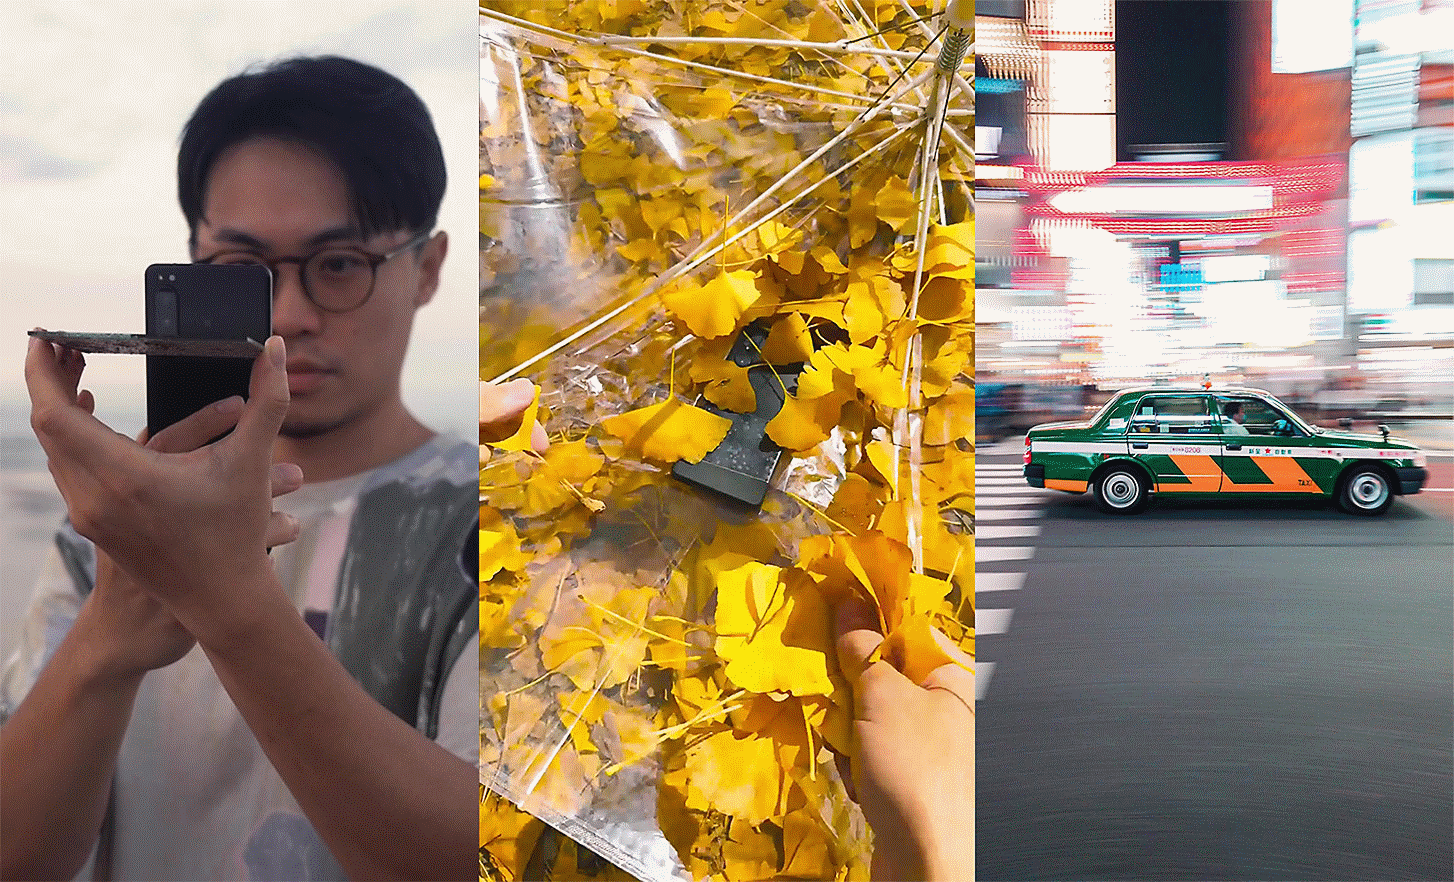 Drei Porträts nebeneinander, links eine Person, die ein Foto macht, in der Mitte ein Telefon zwischen Blättern und rechts ein Auto auf einer Straße